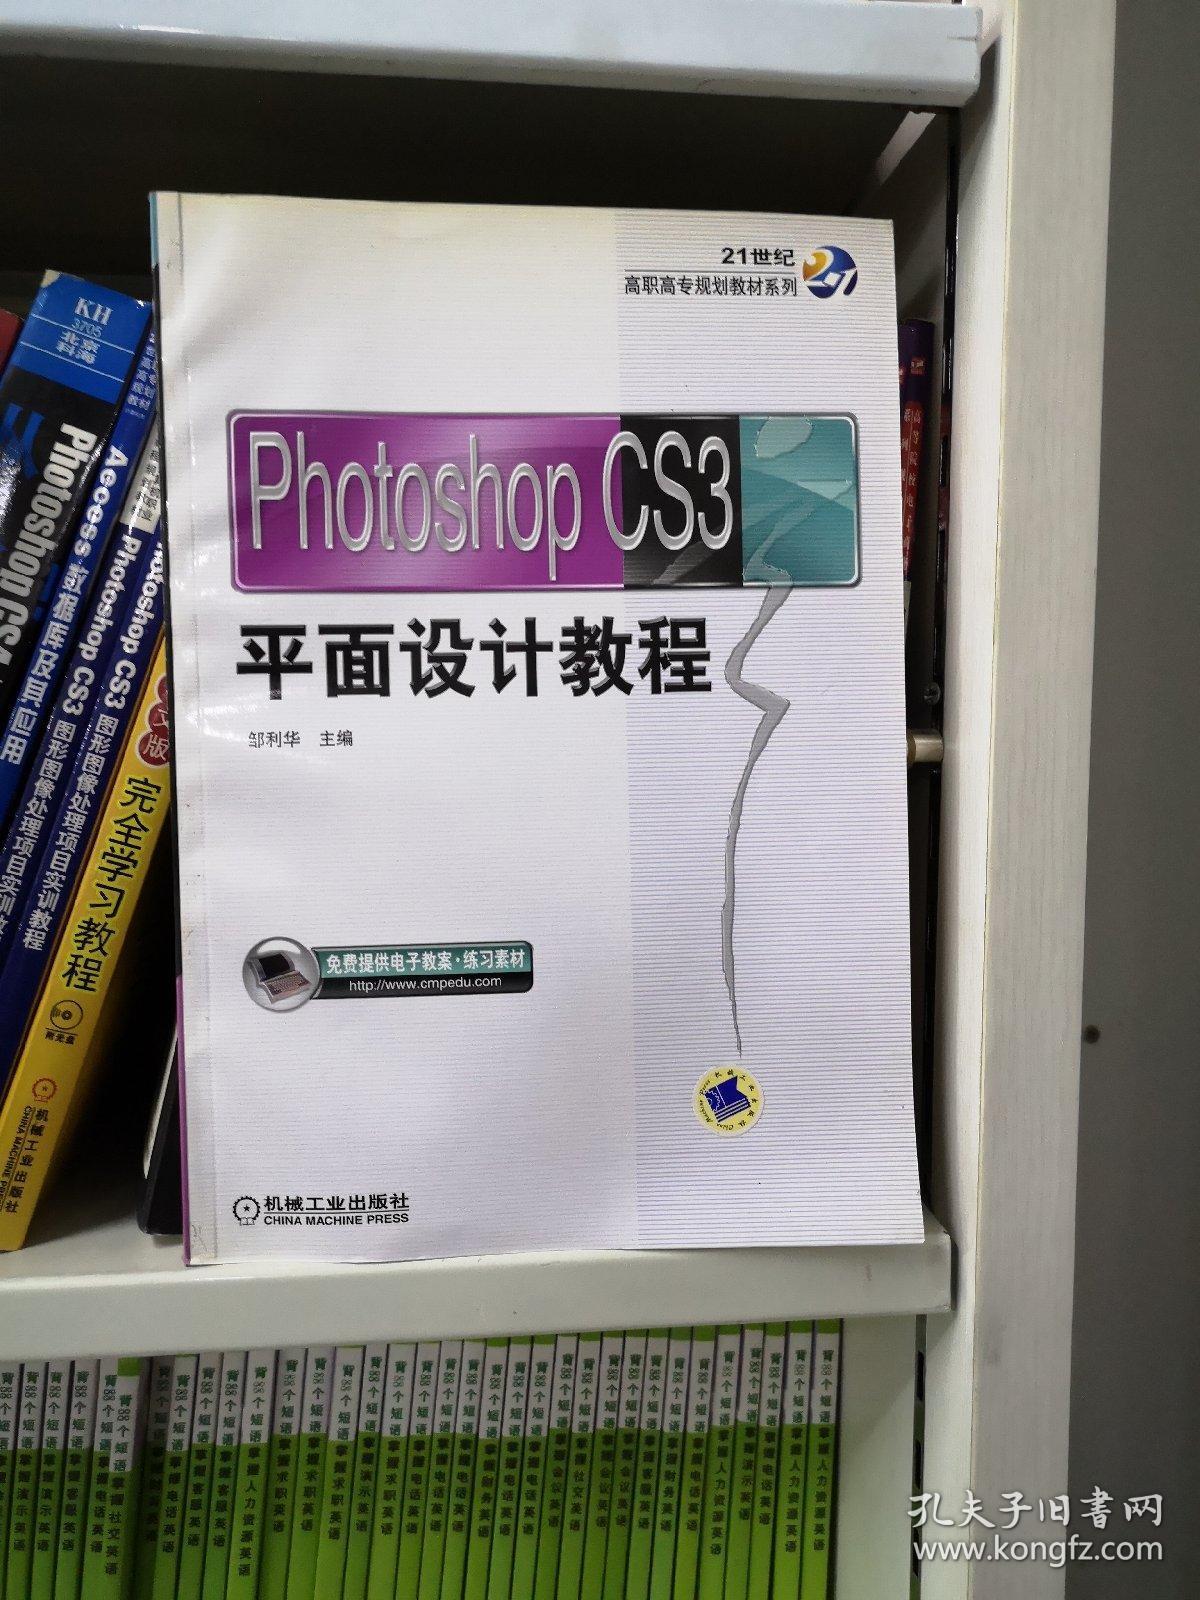 PhotoshopCS3平面设计教程/21世纪高职高专规划教材系列